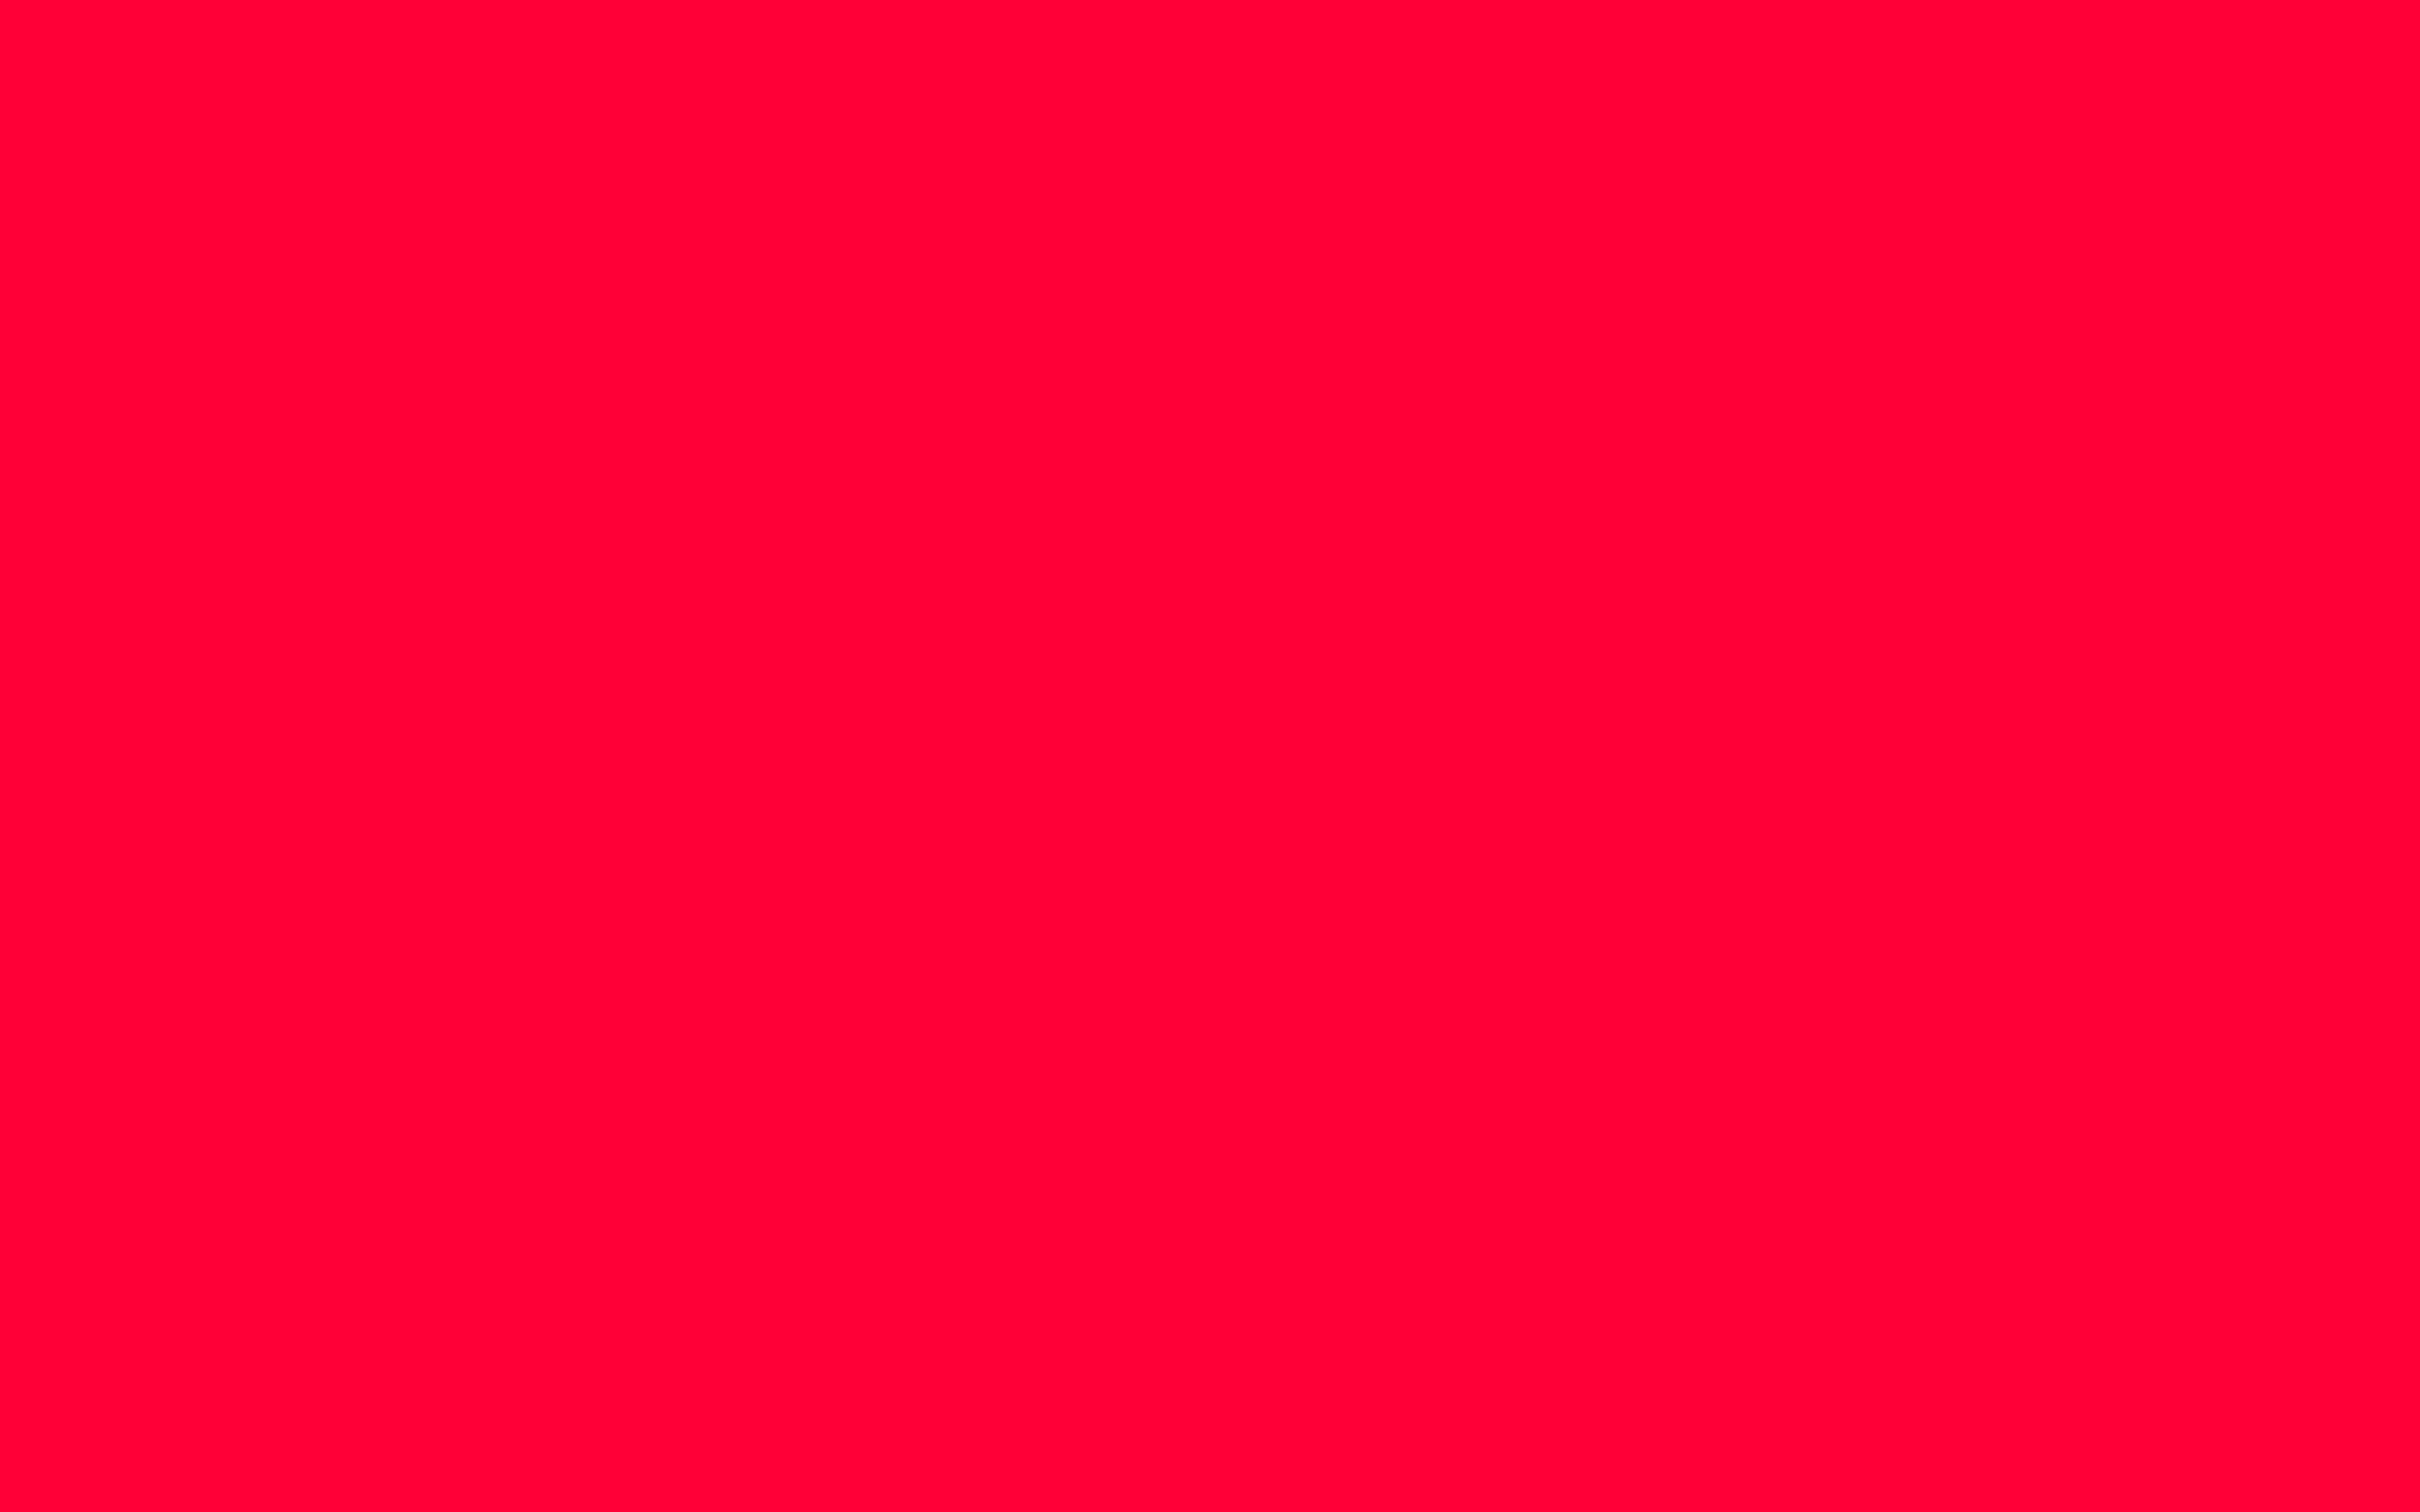 Nền đơn màu đỏ carmine sẽ là điểm nhấn độc đáo và đầy lôi cuốn cho album ảnh của bạn. Với sắc đỏ đậm, nổi bật, nền đơn màu đỏ carmine sẽ giúp cho những bức ảnh của bạn trở nên đặc biệt và nổi bật hơn. Nếu bạn muốn tạo nên một dấu ấn đặc biệt cho album ảnh của mình, hãy lựa chọn ngay nền đơn màu đỏ carmine này.